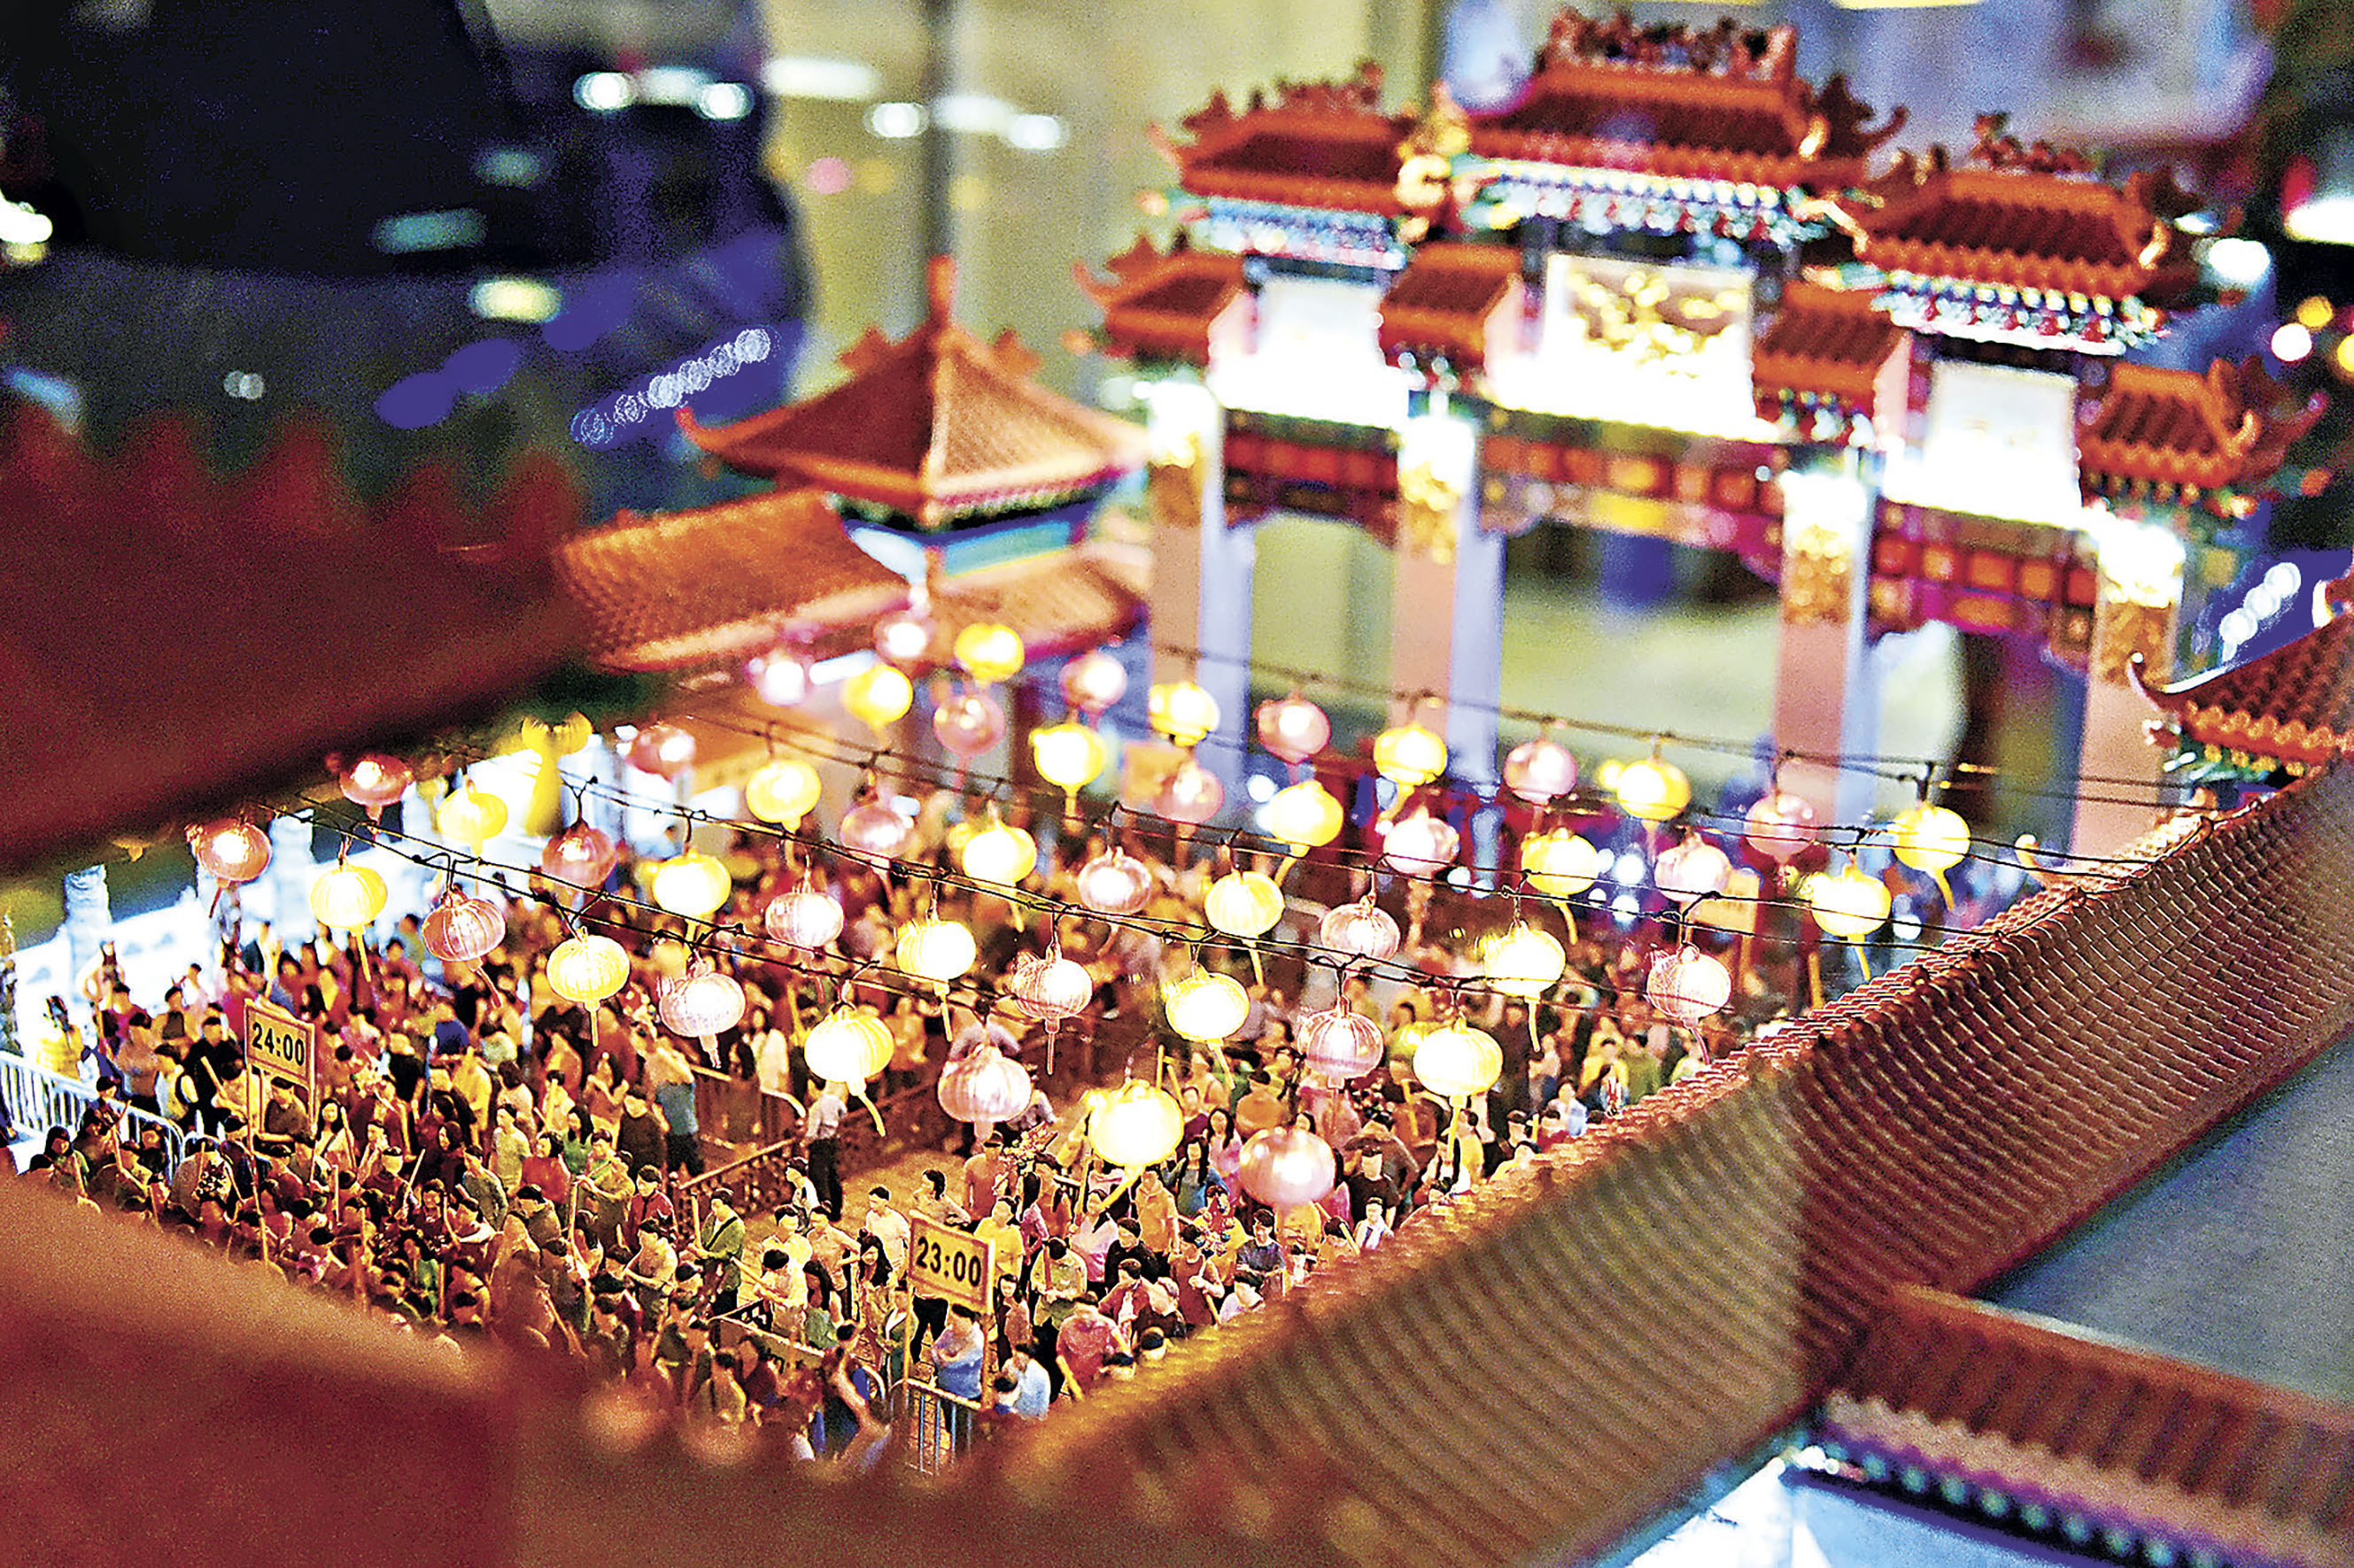 中秋佳节及啬色园百周年,黄大仙祠将於本月18至24日举行花灯庙会活动